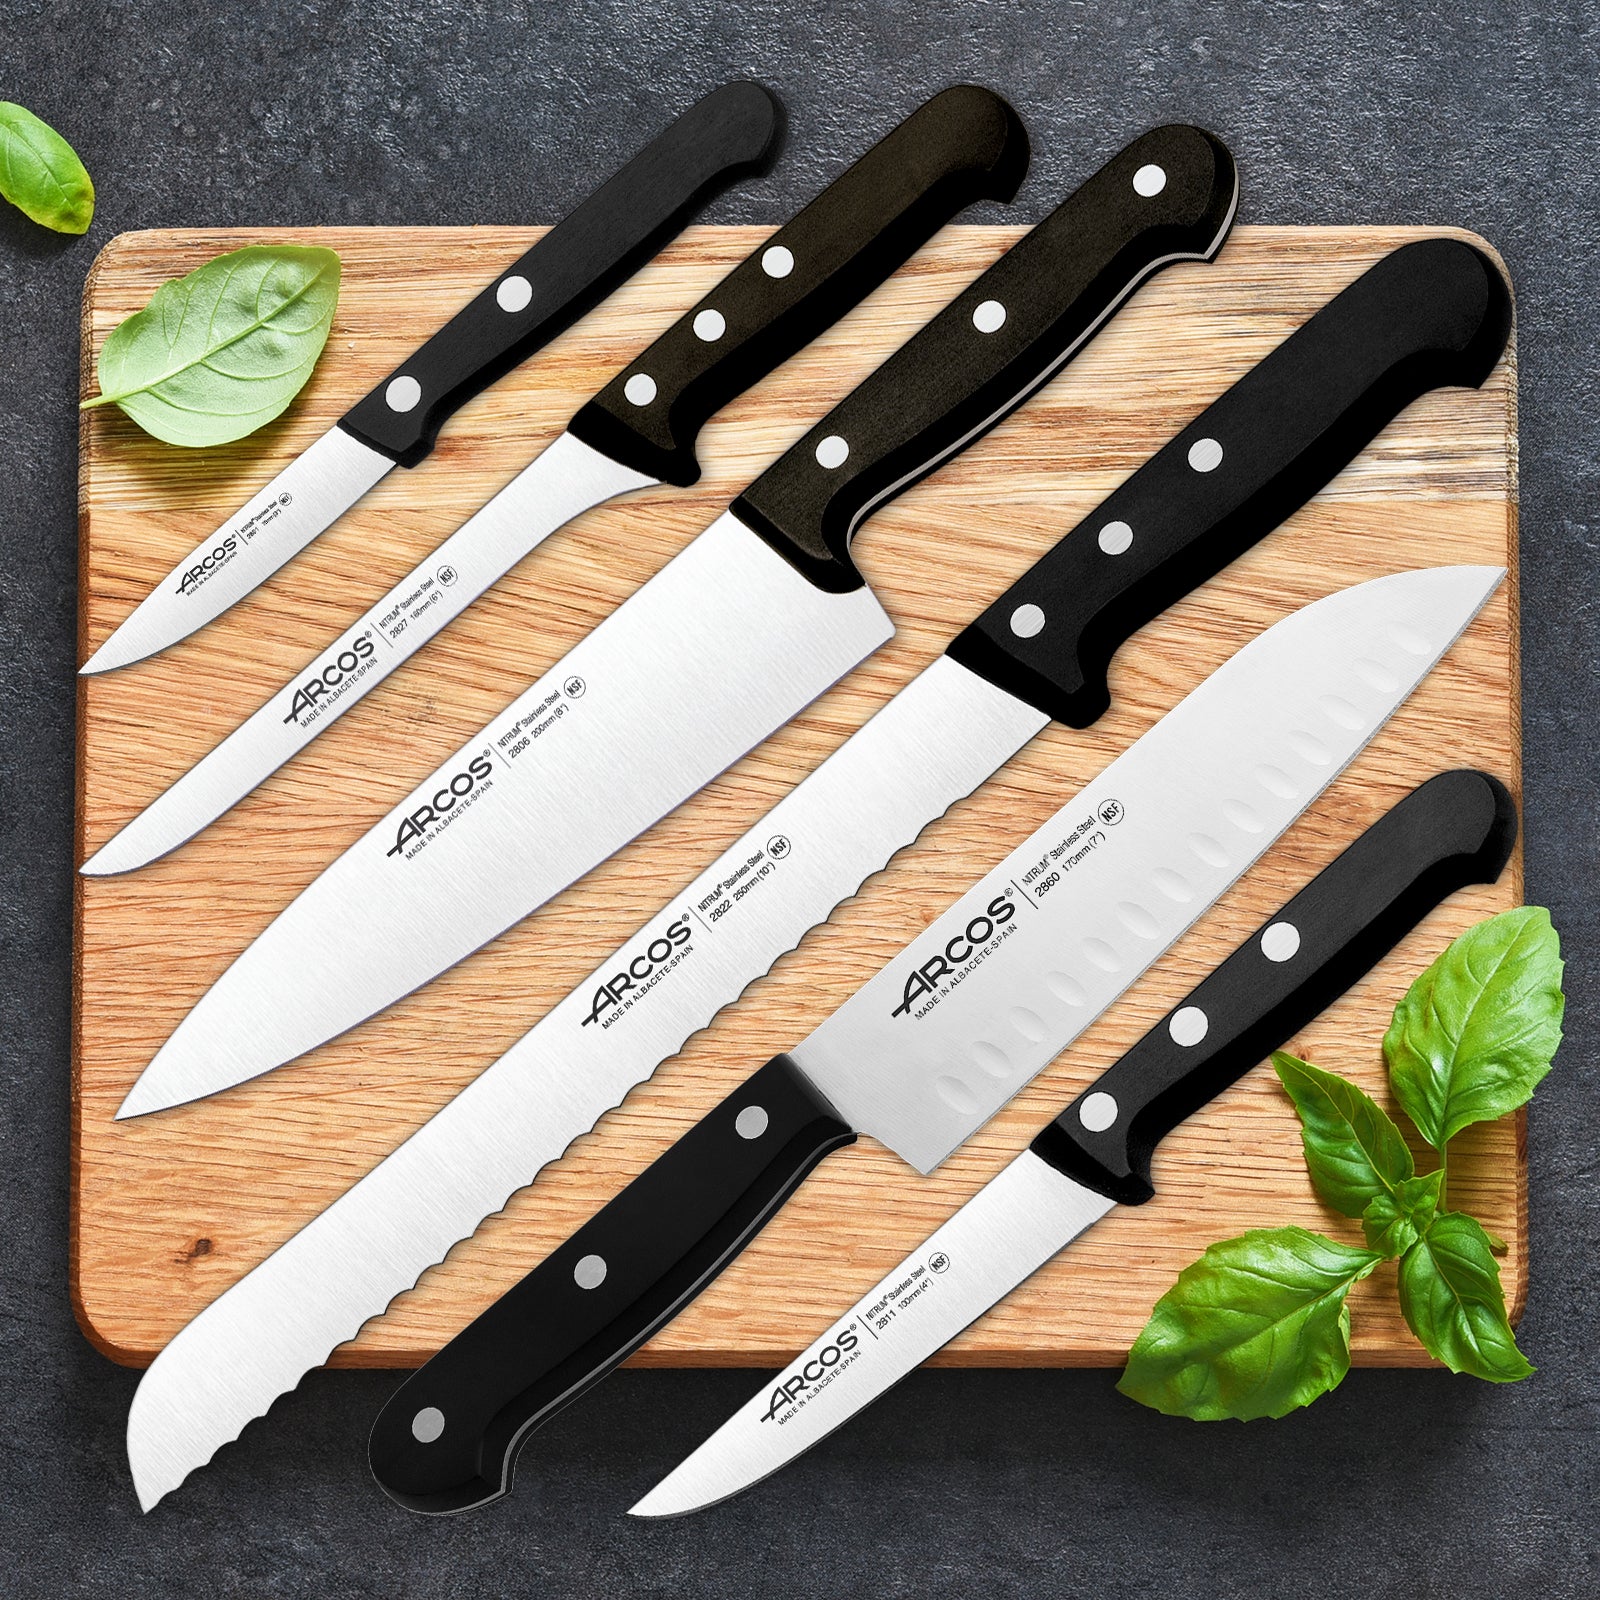 Set de Cocina de cuchillos Arcos de 2 piezas - Universal